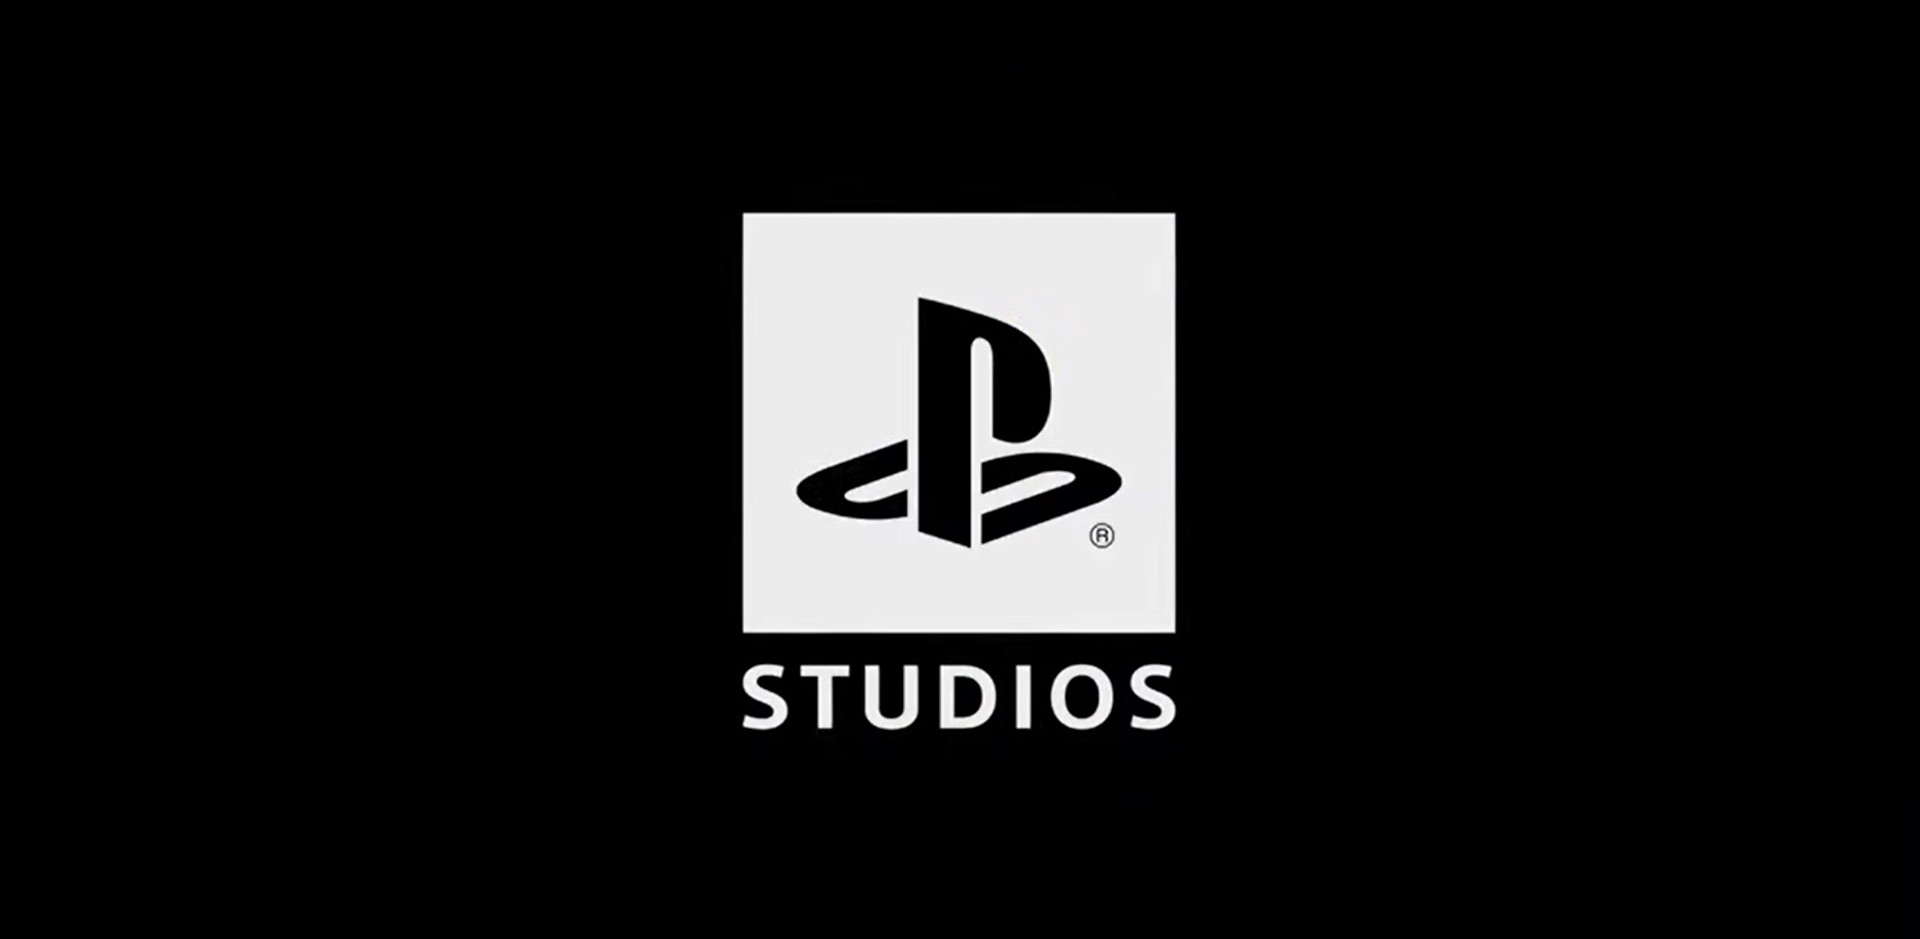 Jim Ryan เผยทั้ง 17 สตูดิโอ ใน PS Studios กำลังพัฒนาเกมให้กับ PS5 อยู่